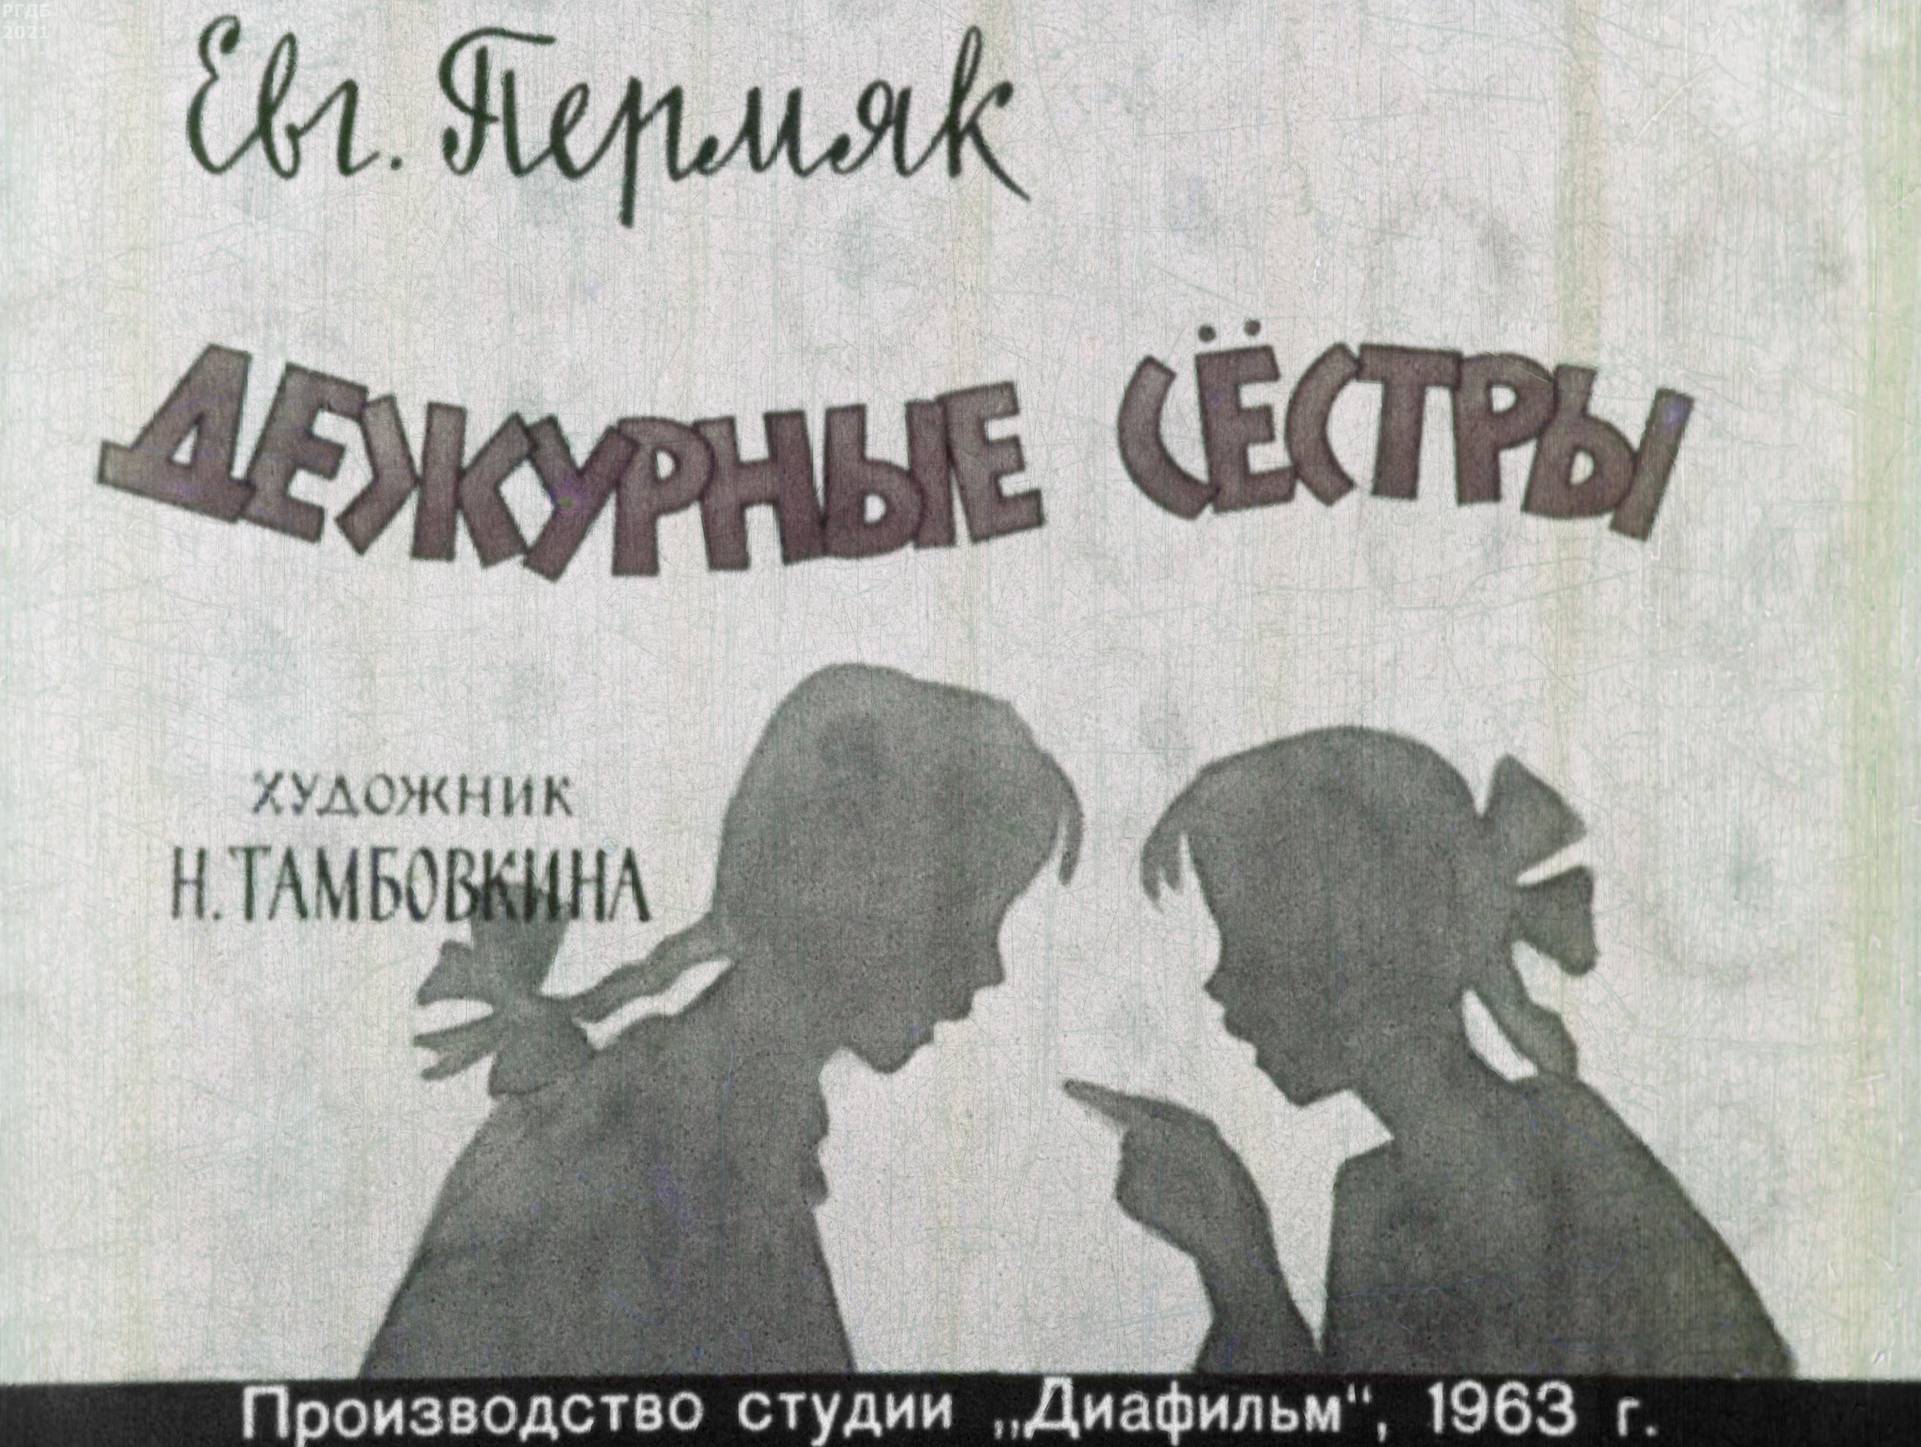 Пермяк Евгений Андреевич - Дежурные сёстры - 1963